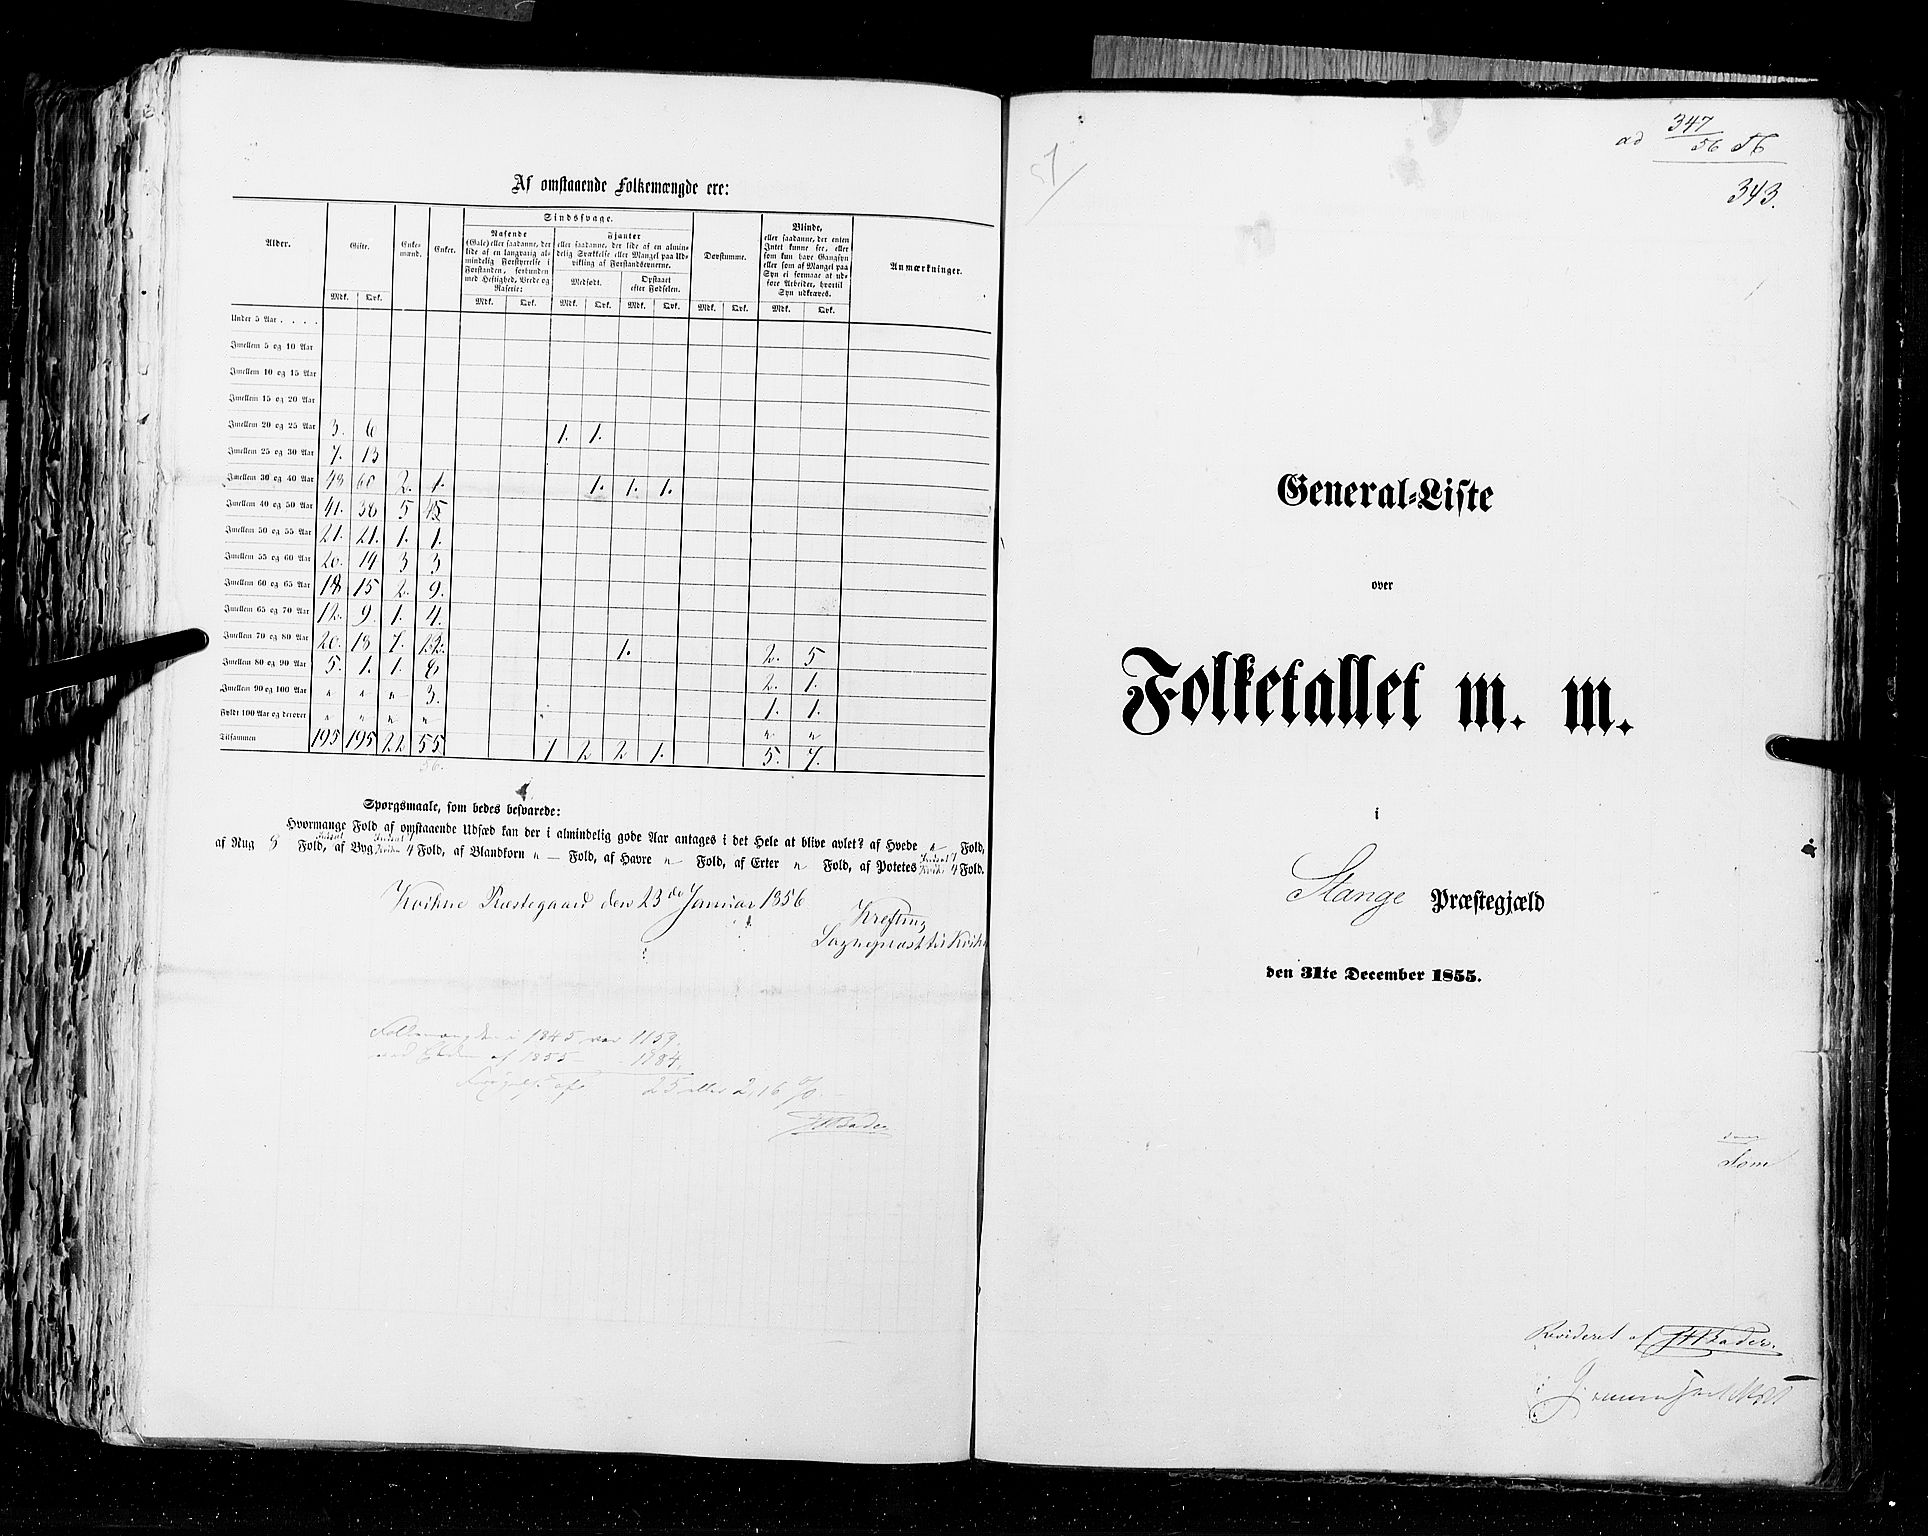 RA, Folketellingen 1855, bind 1: Akershus amt, Smålenenes amt og Hedemarken amt, 1855, s. 343